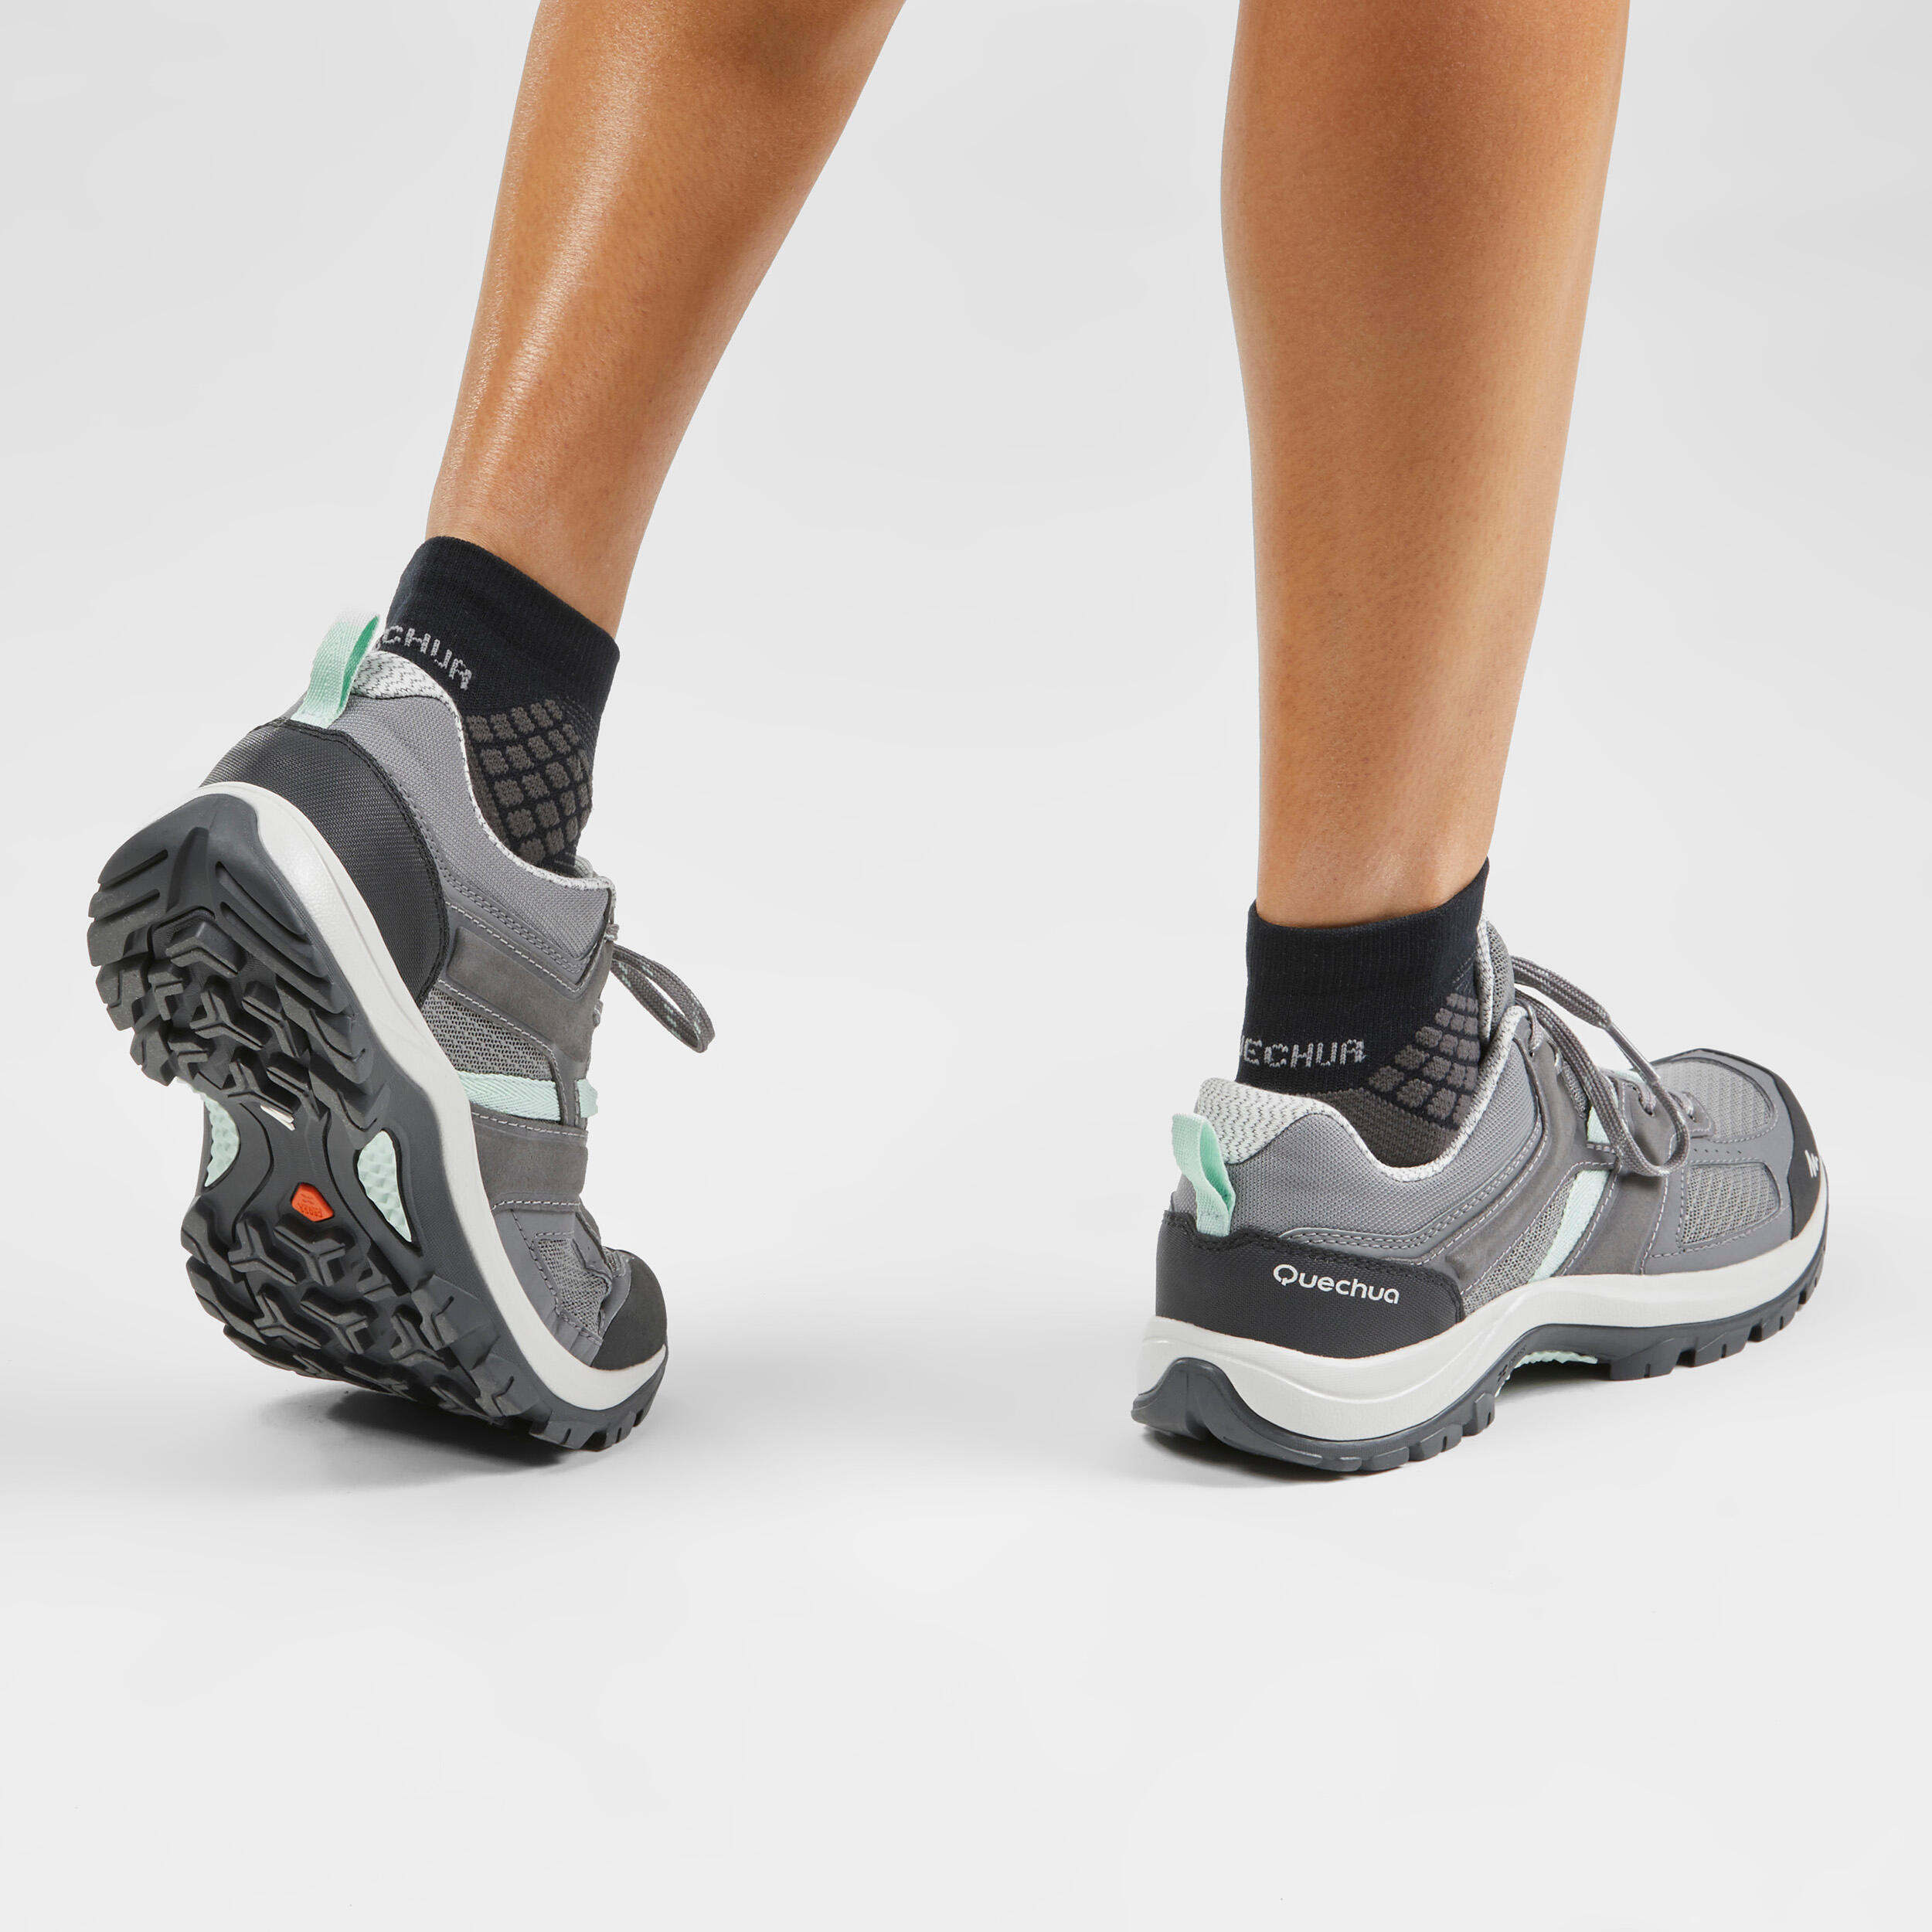 Chaussures de randonnée femme – MH 100 gris/vert - QUECHUA